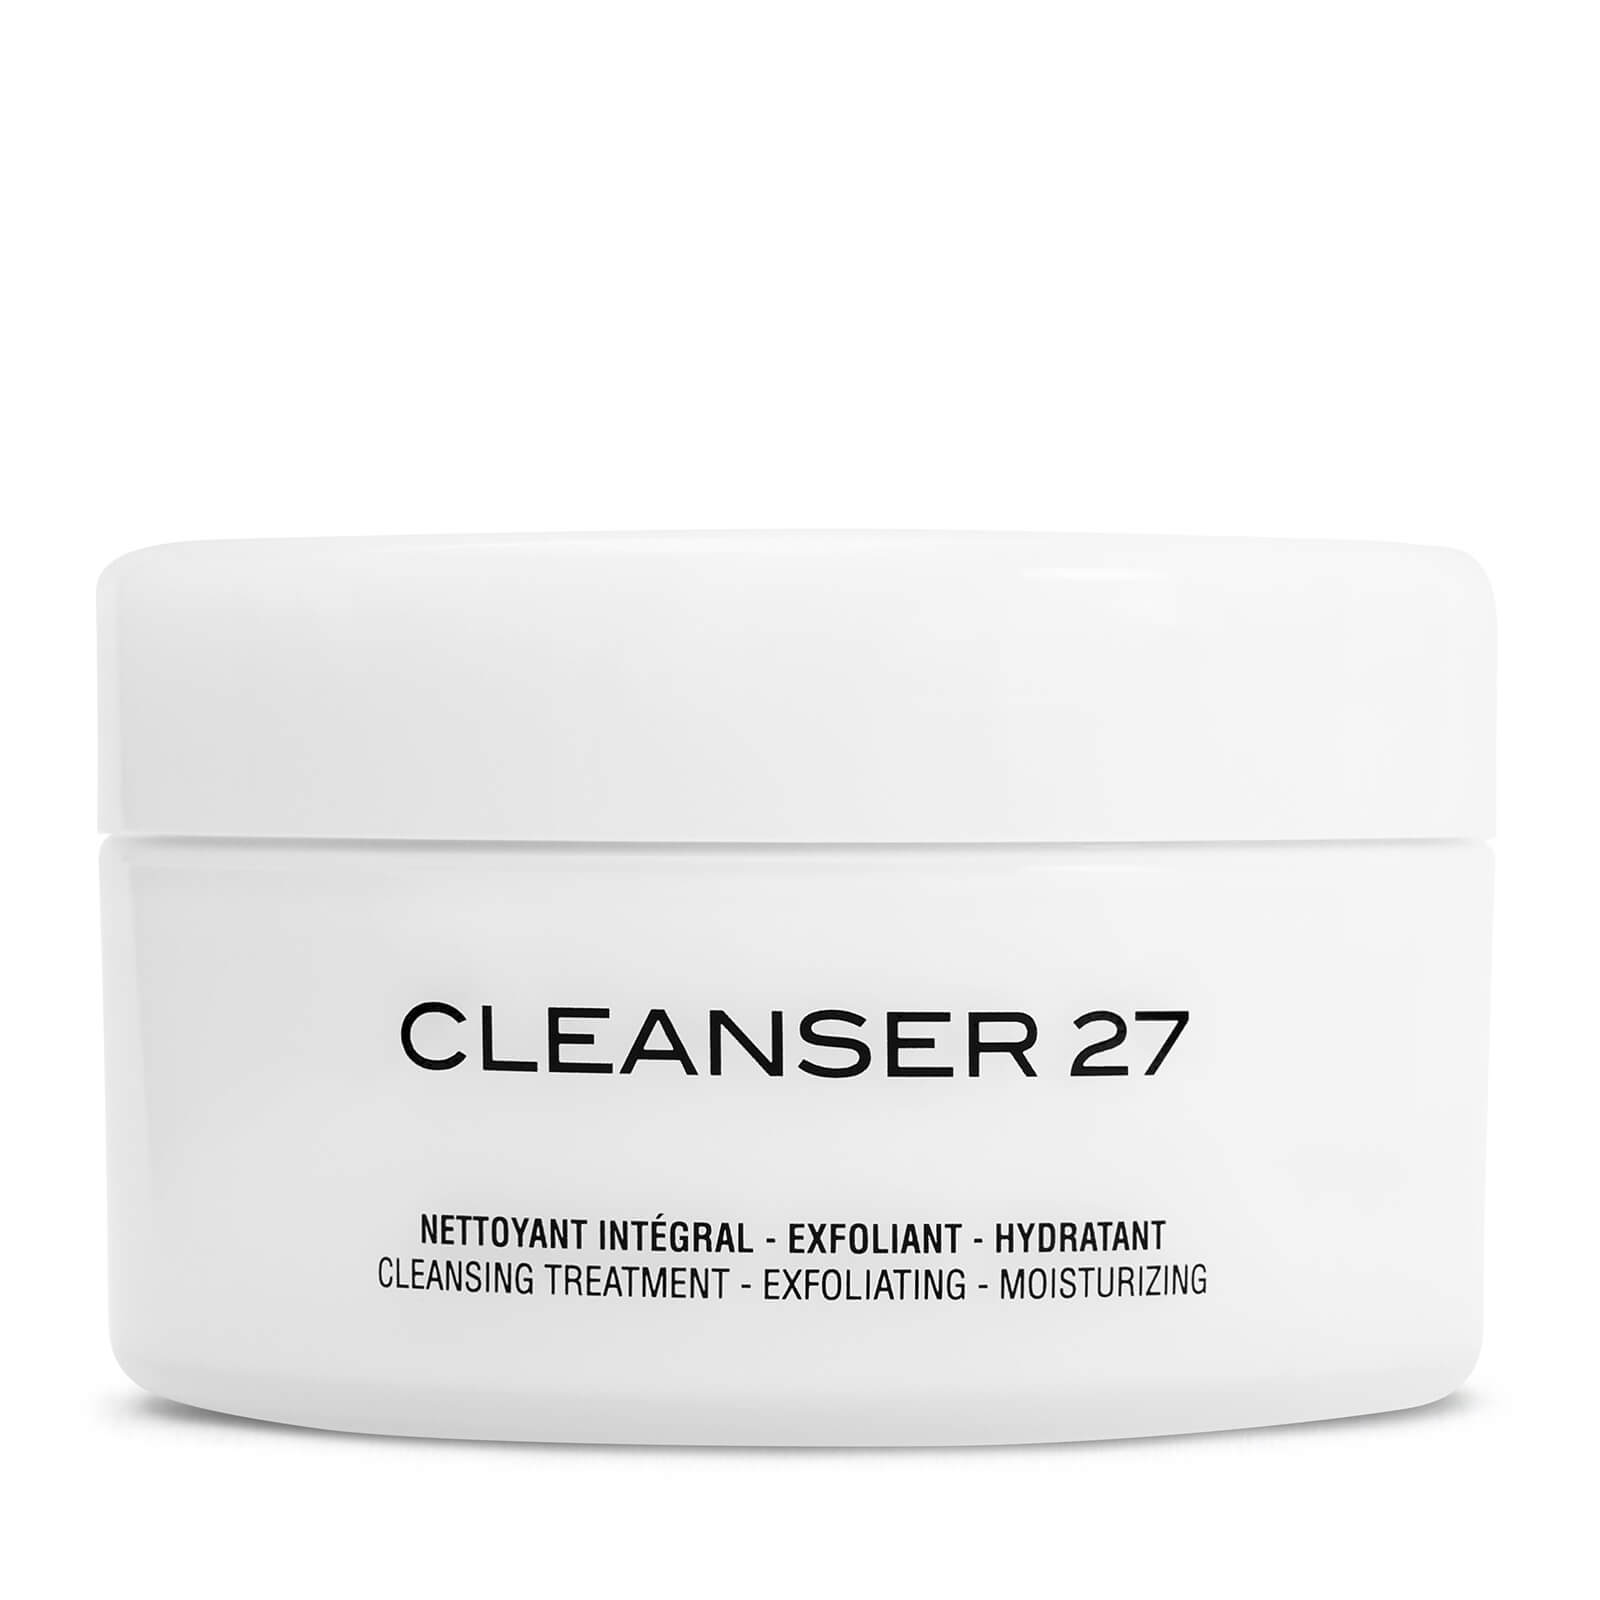 Bálsamo limpiador celular biorregulador Cosmetics 27 by ME Skinlab (125ml)